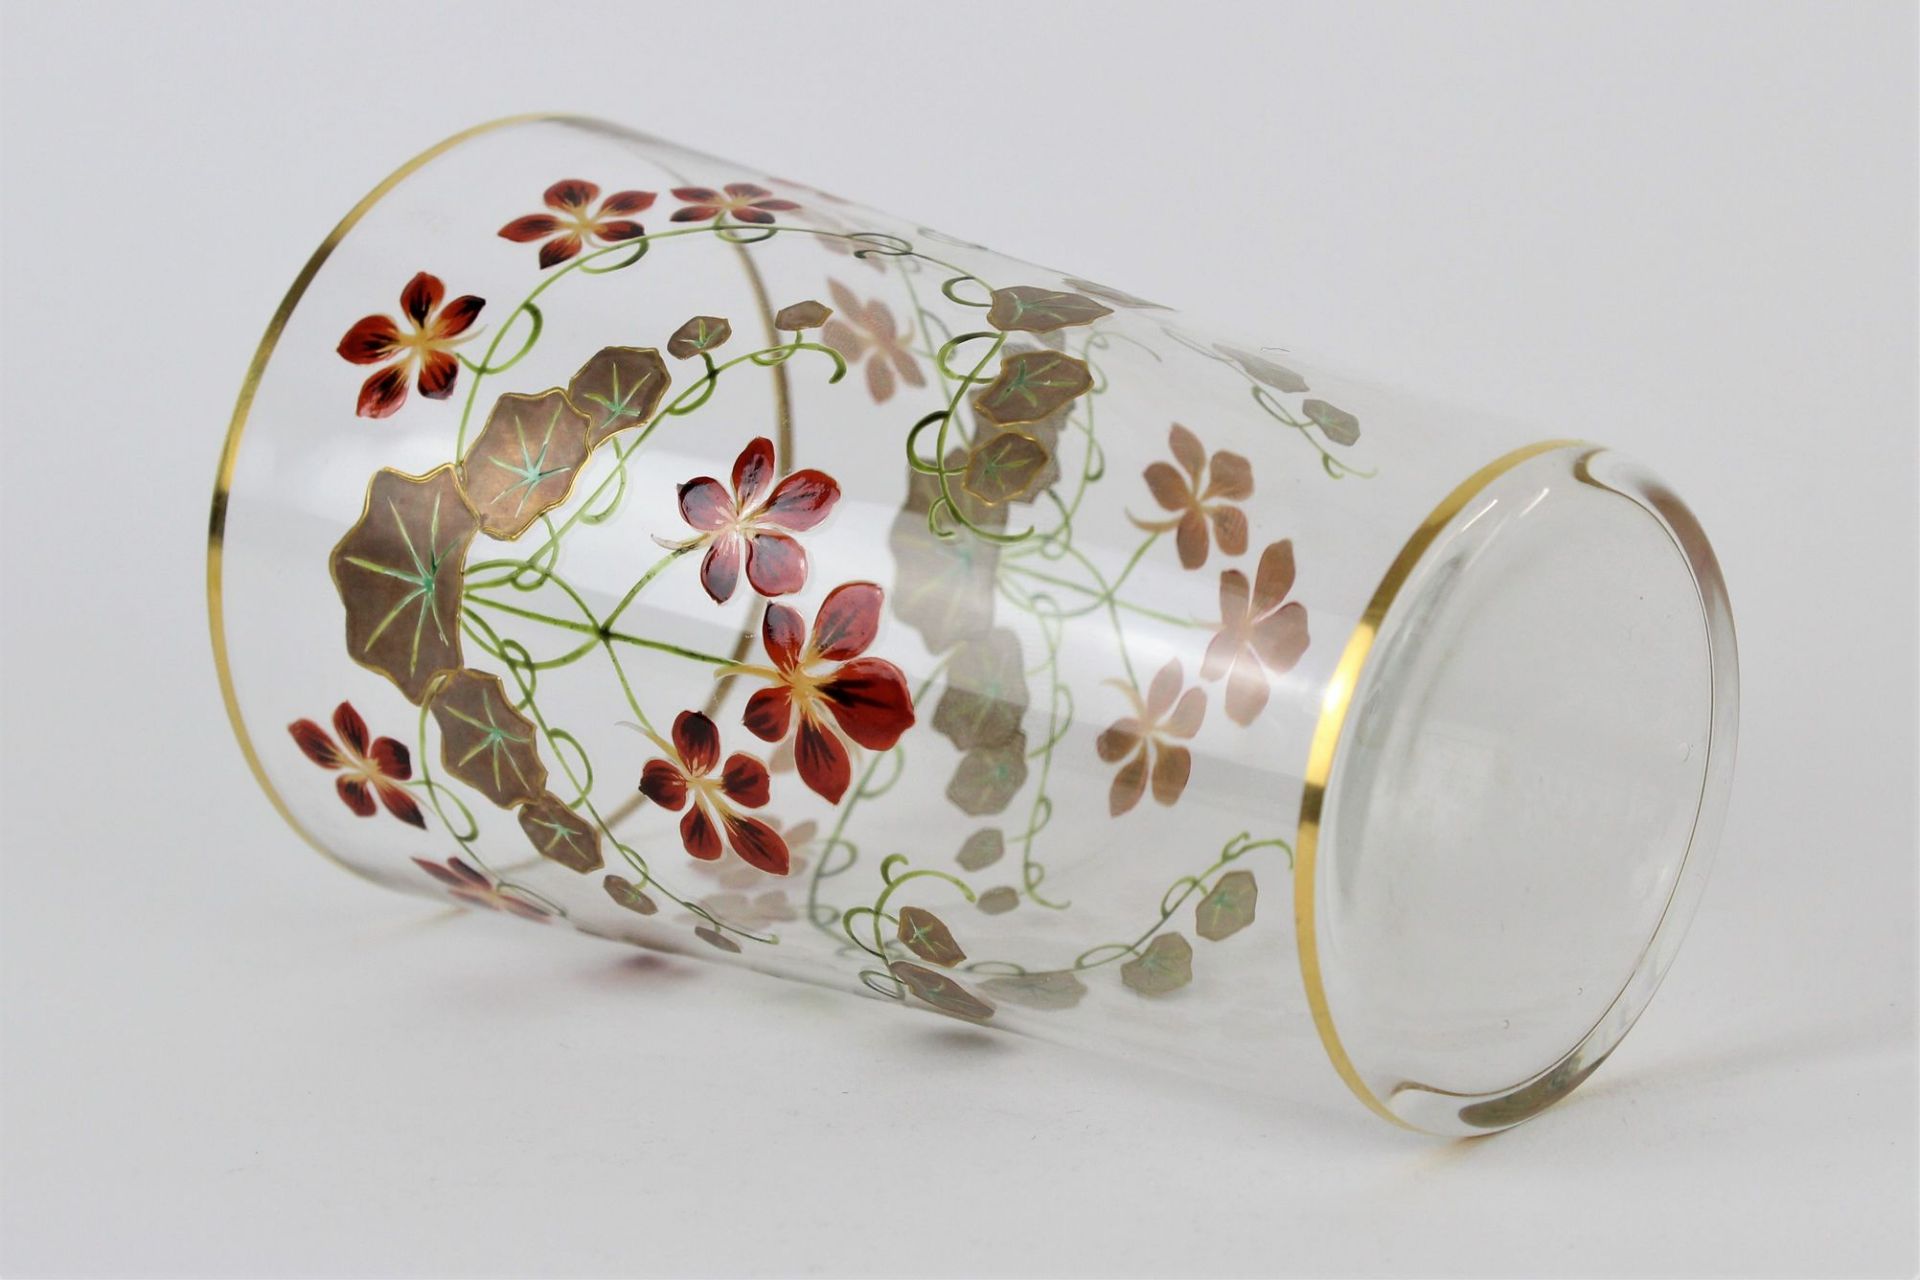 Mundgeblasenes Jugendstilglas mit Blumendekor - Bild 3 aus 3